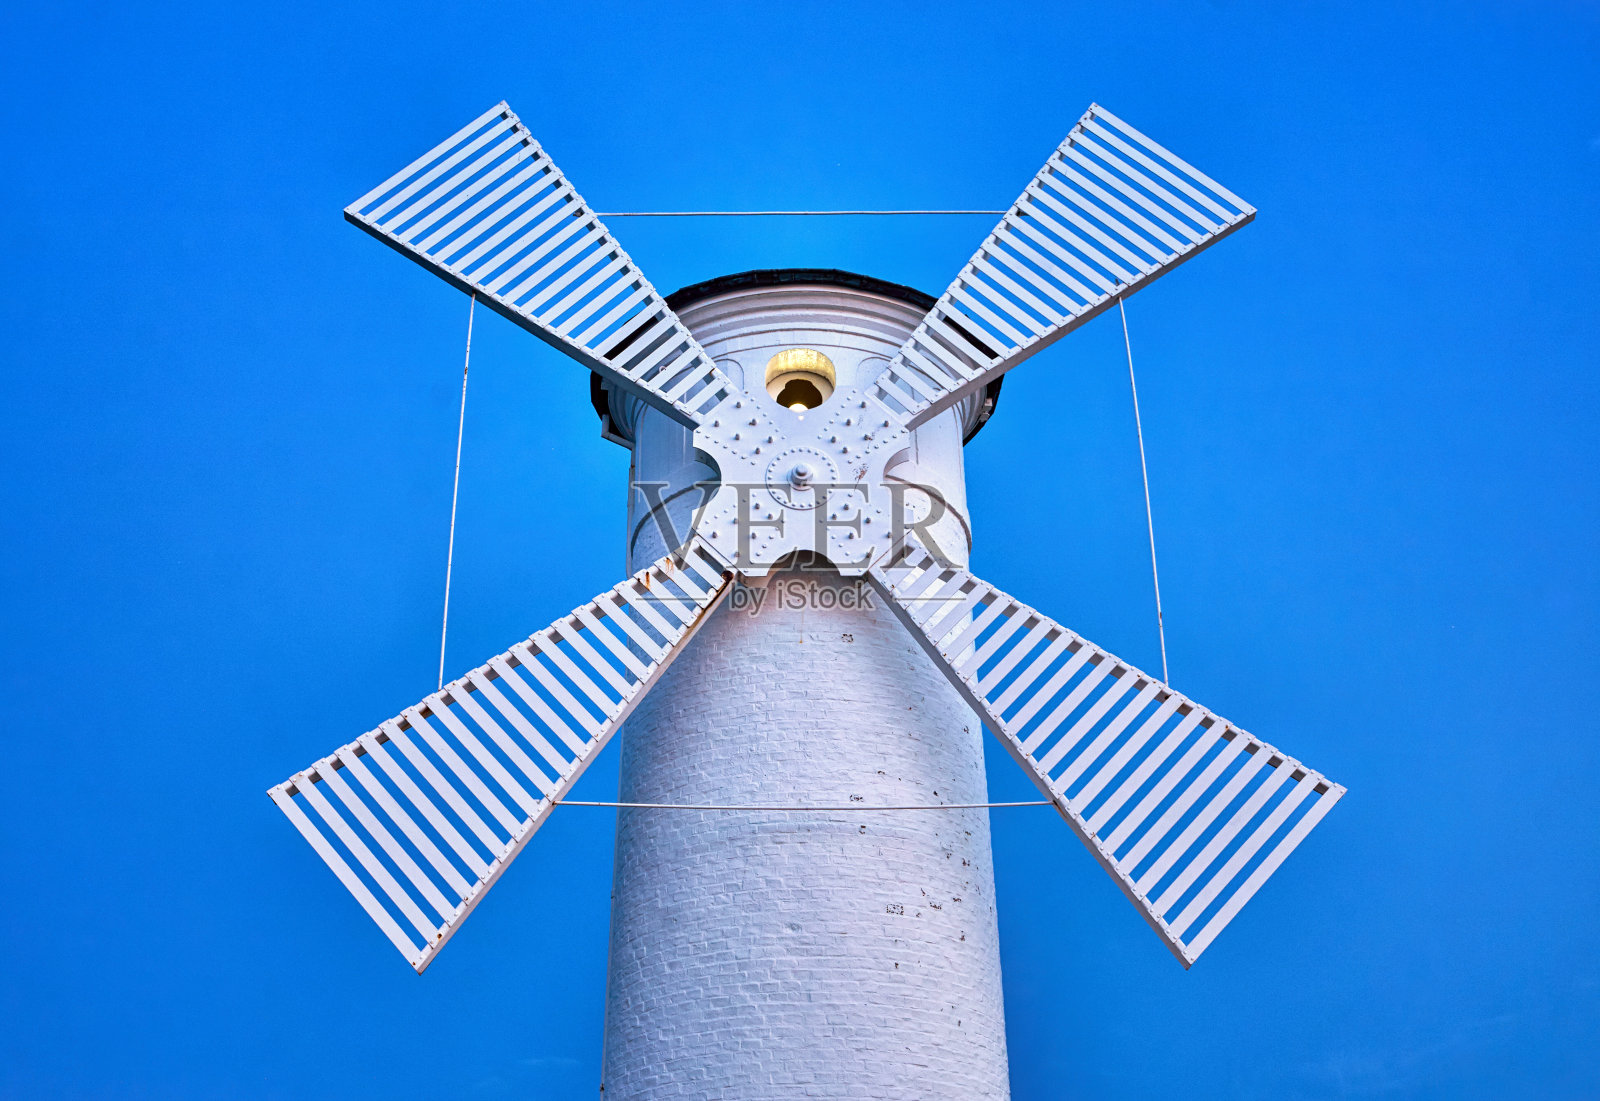 趋势色白色超现实的灯塔风车在蓝色的背景。照片摄影图片